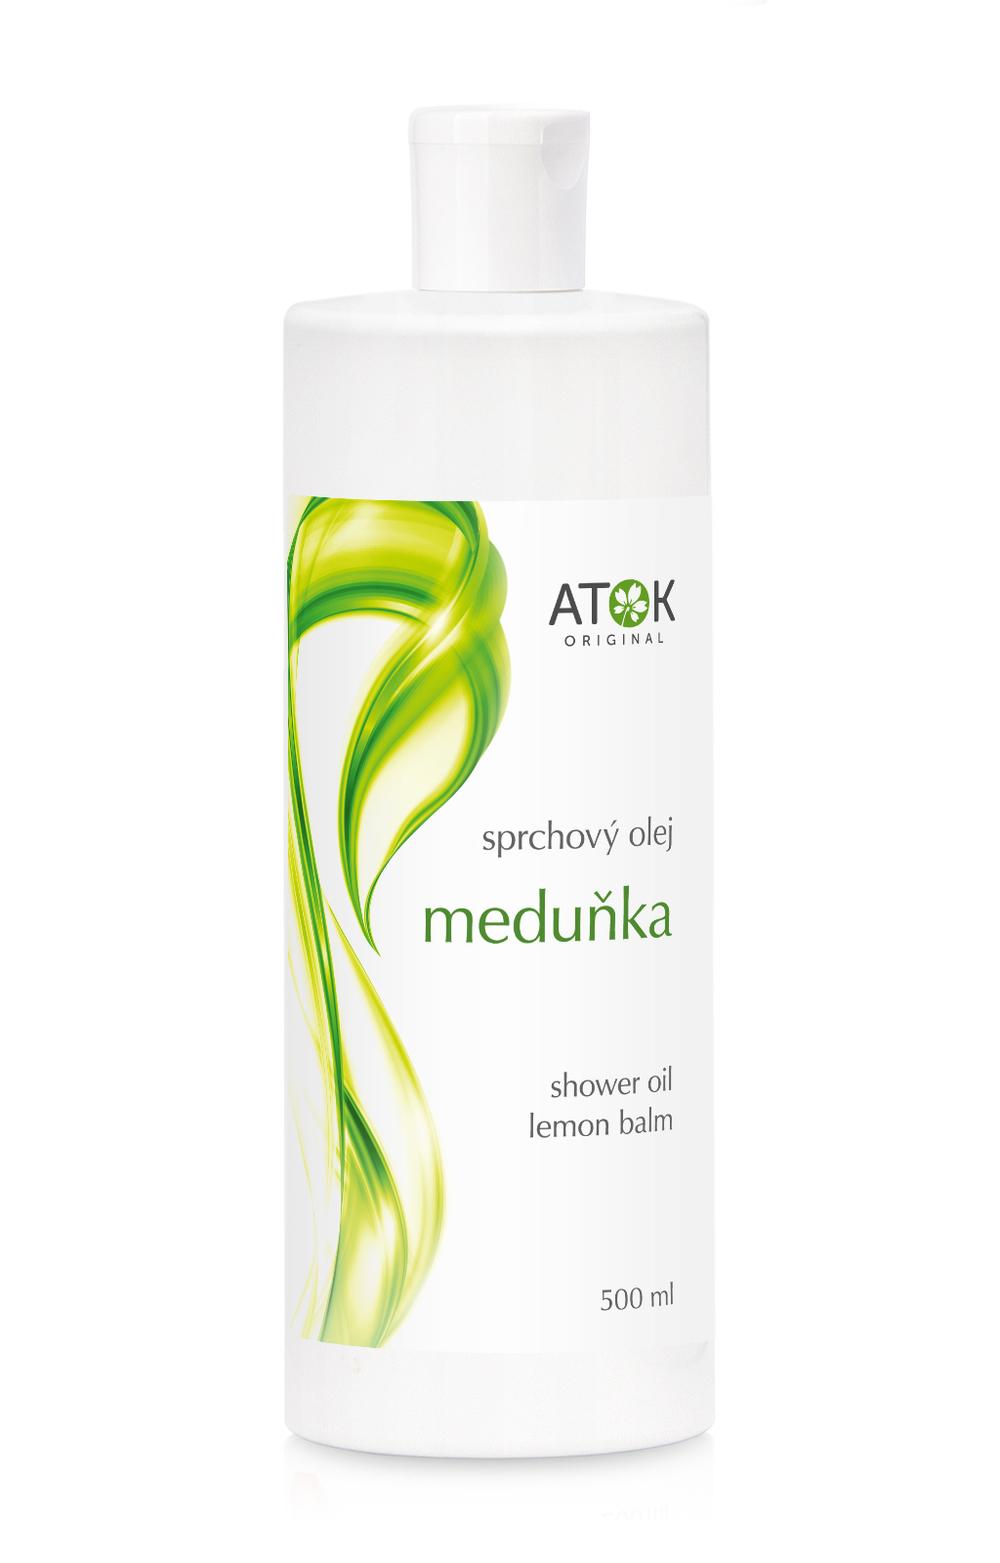 Sprchový olej Medovka - Original ATOK Obsah: 500 ml